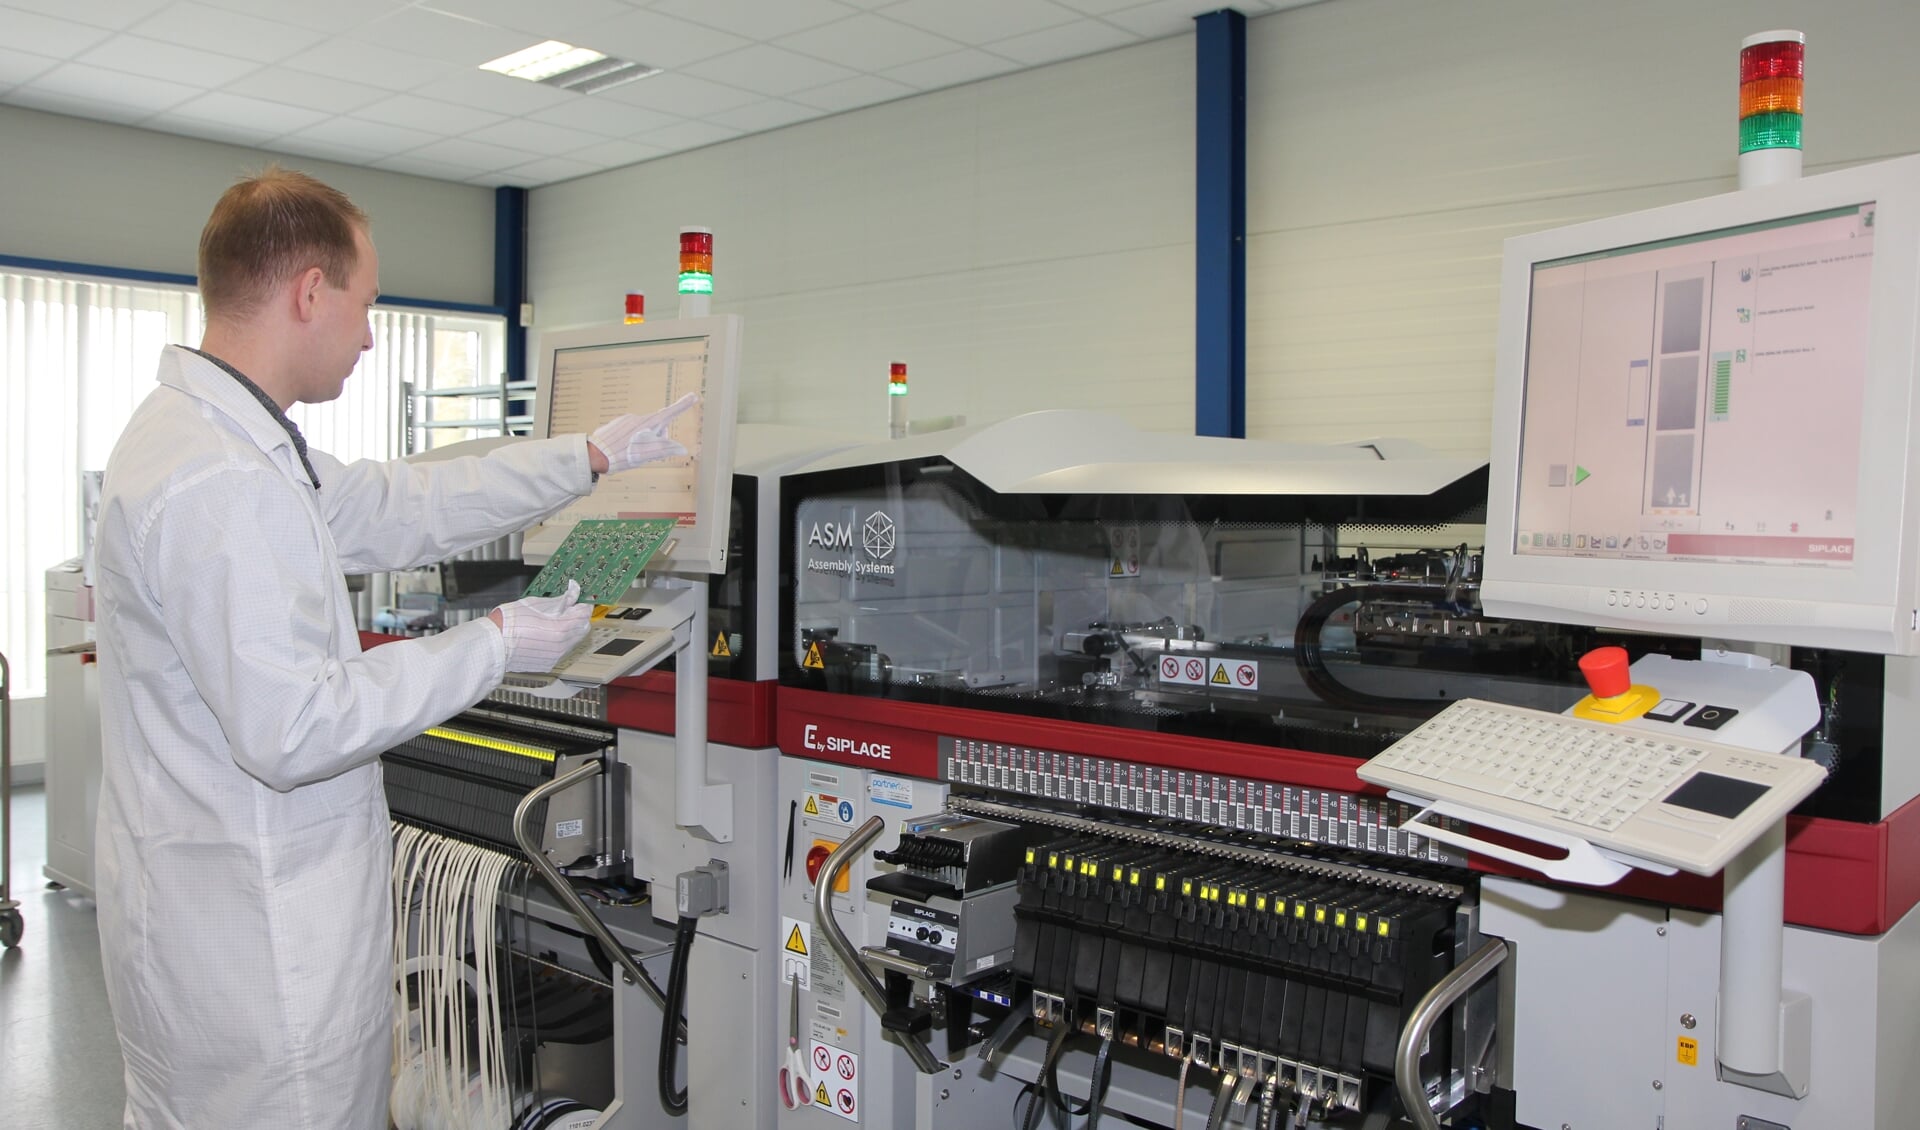 De pick and placemachine van Interay Solutions in Burgum maakt deel uit van het productieproces voor printplaten zoals productieleder Agricola hier in zijn hand houdt. Dit soort printplaten worden komende weken gemaakt voor beademingsapparatuur.